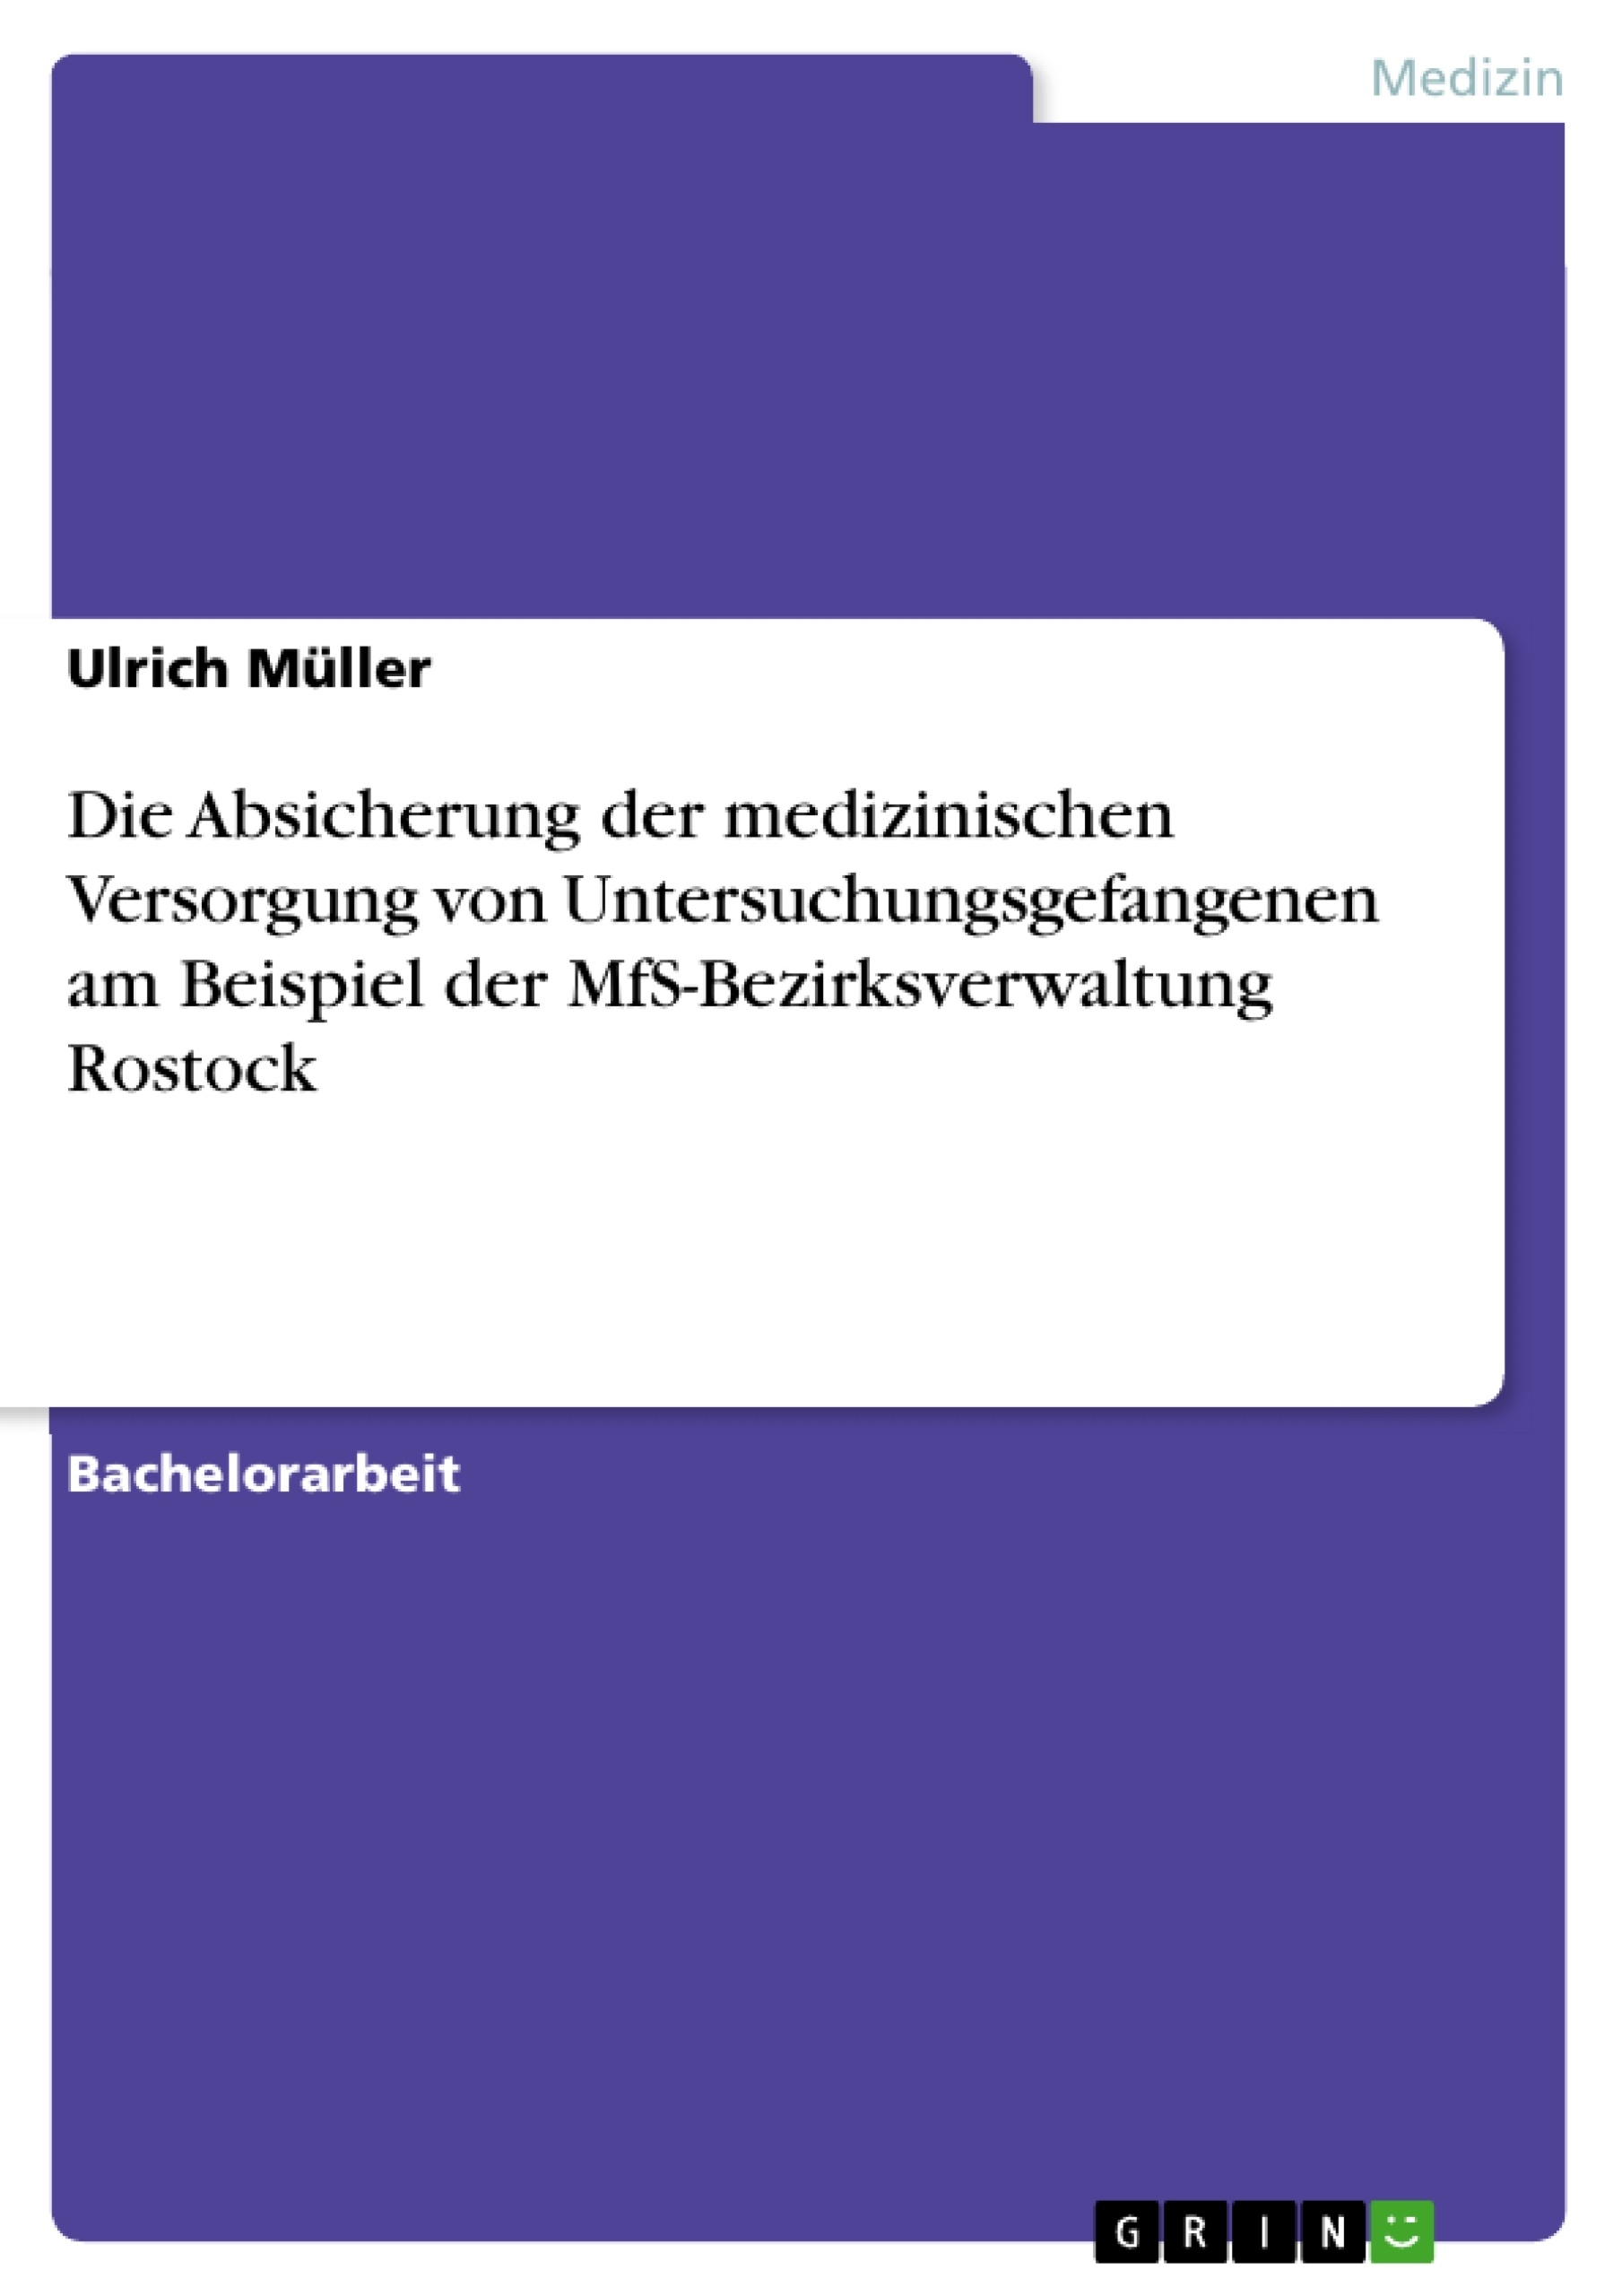 Titre: Die Absicherung der medizinischen Versorgung von Untersuchungsgefangenen am Beispiel der MfS-Bezirksverwaltung Rostock